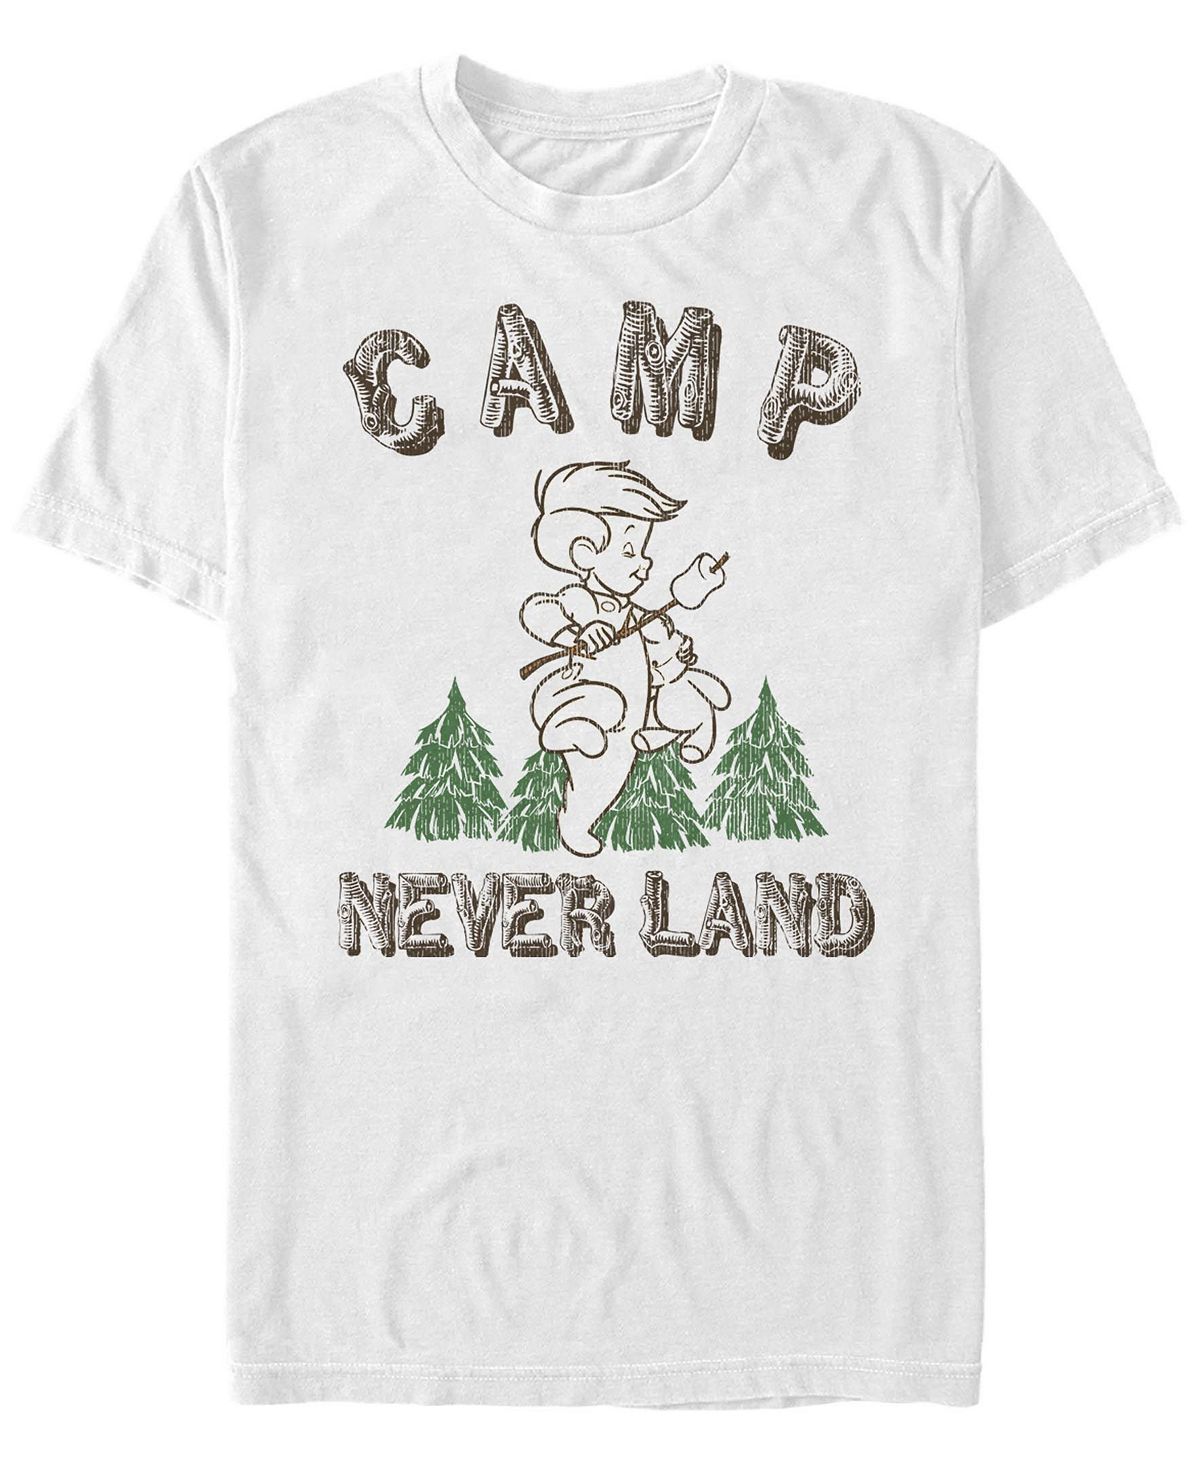 Мужская футболка с круглым вырезом camp neverland с короткими рукавами Fifth Sun, белый